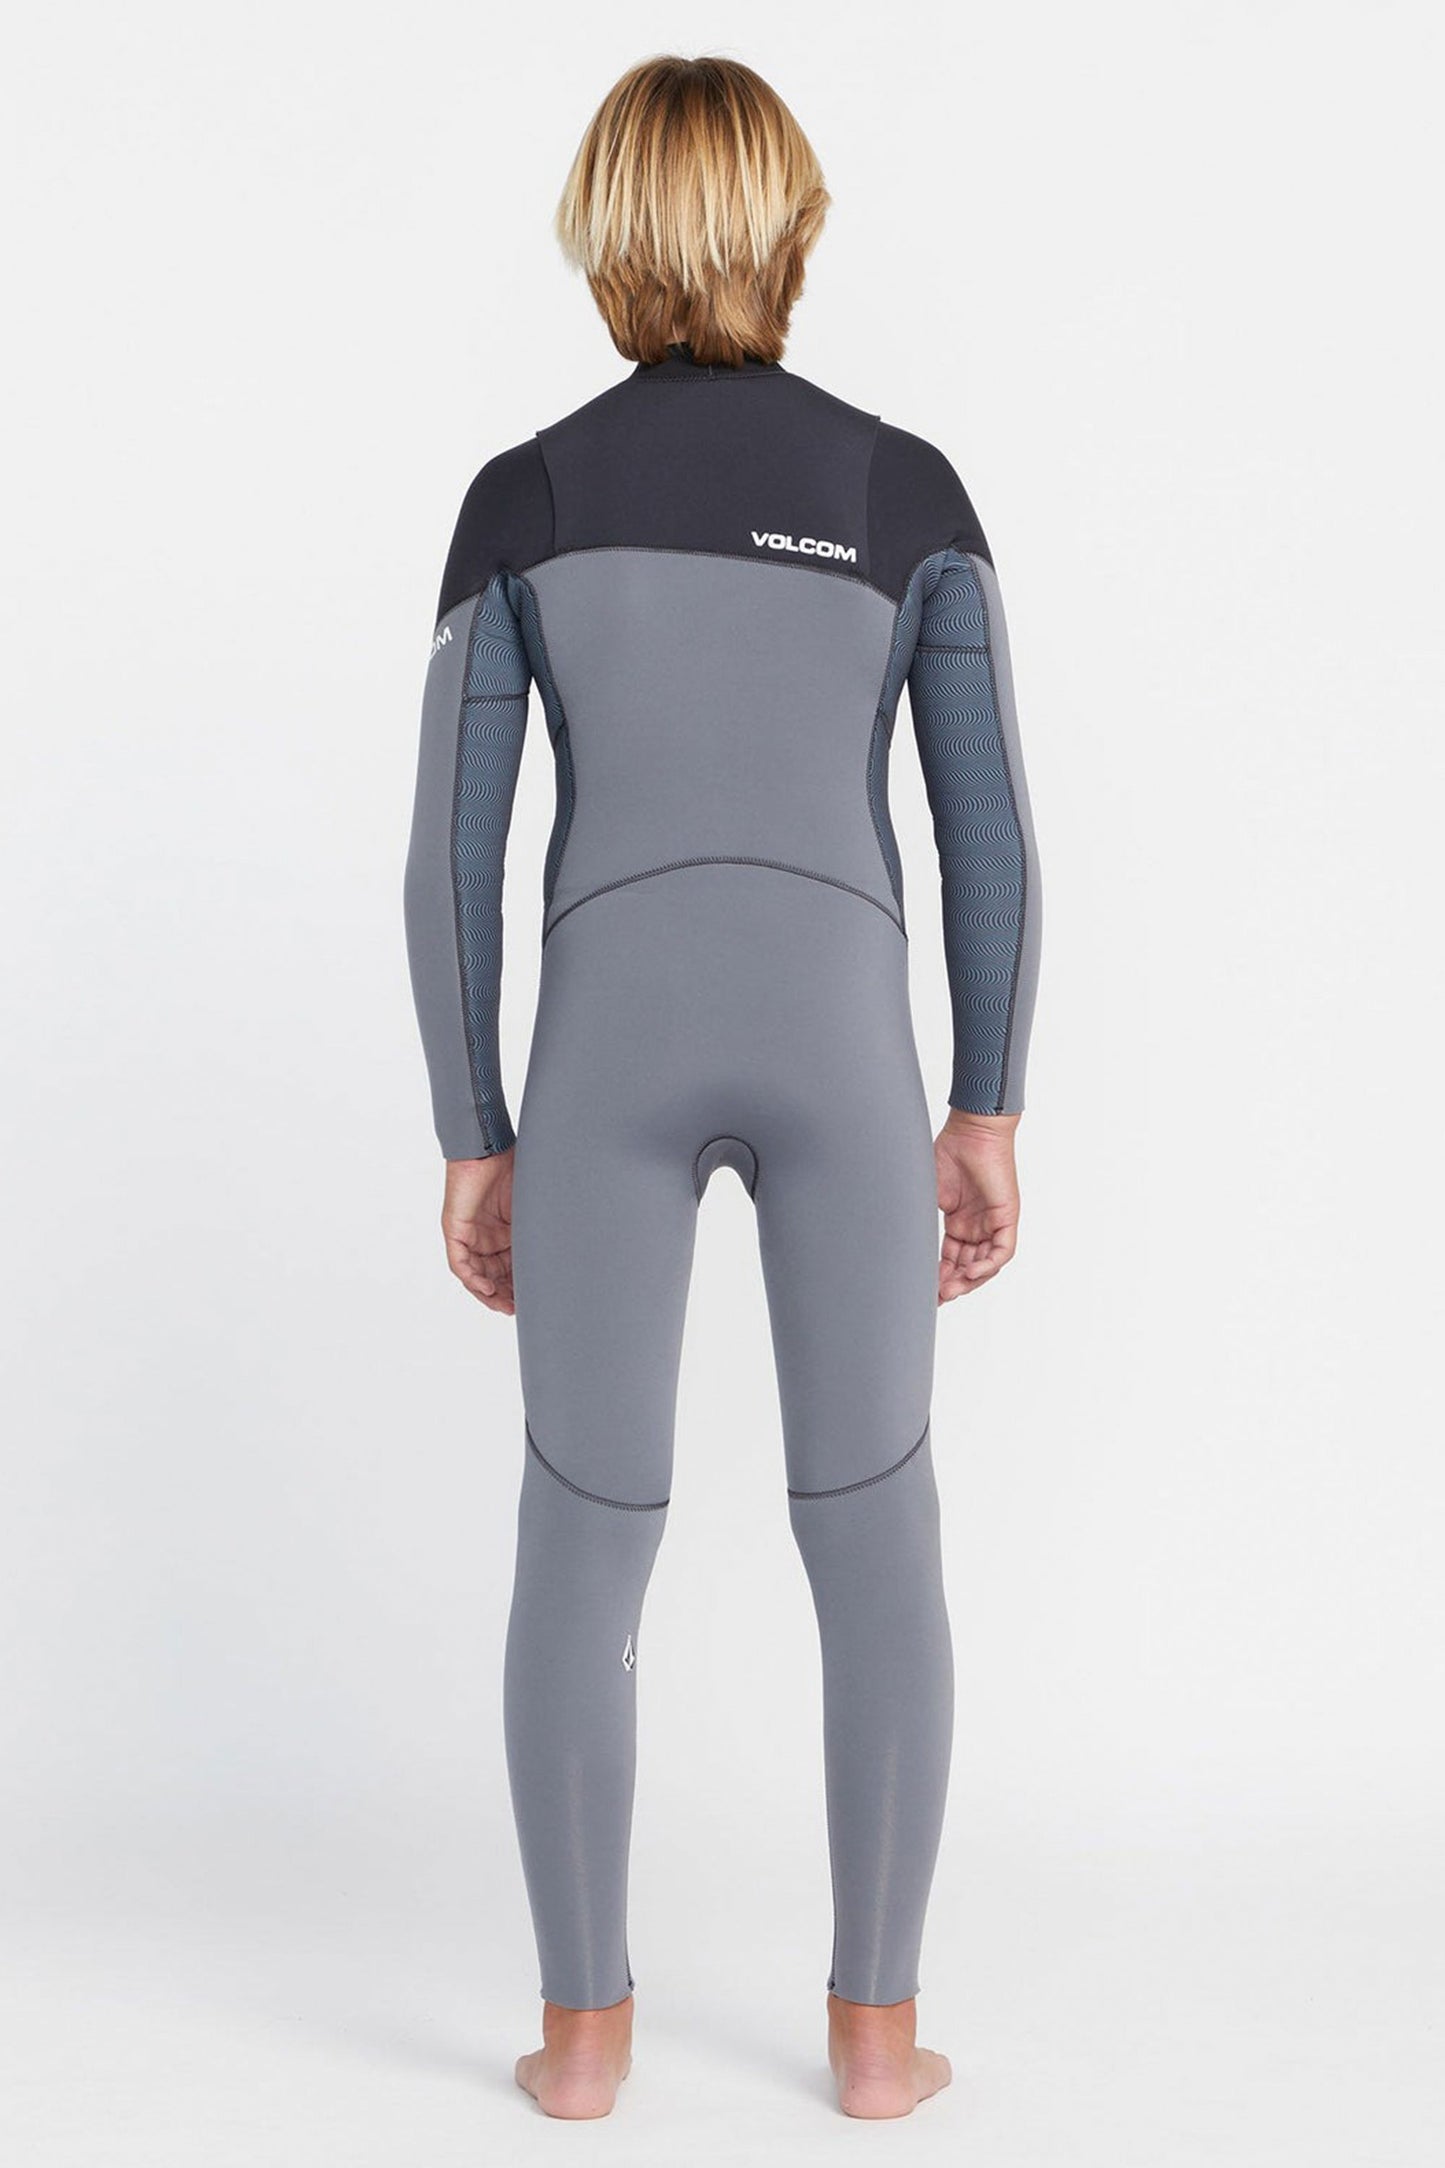 Pukas-Surf-Shop-Volcom-Wetsuit-wetsuit-3-2mm-chest-zip-charcoal